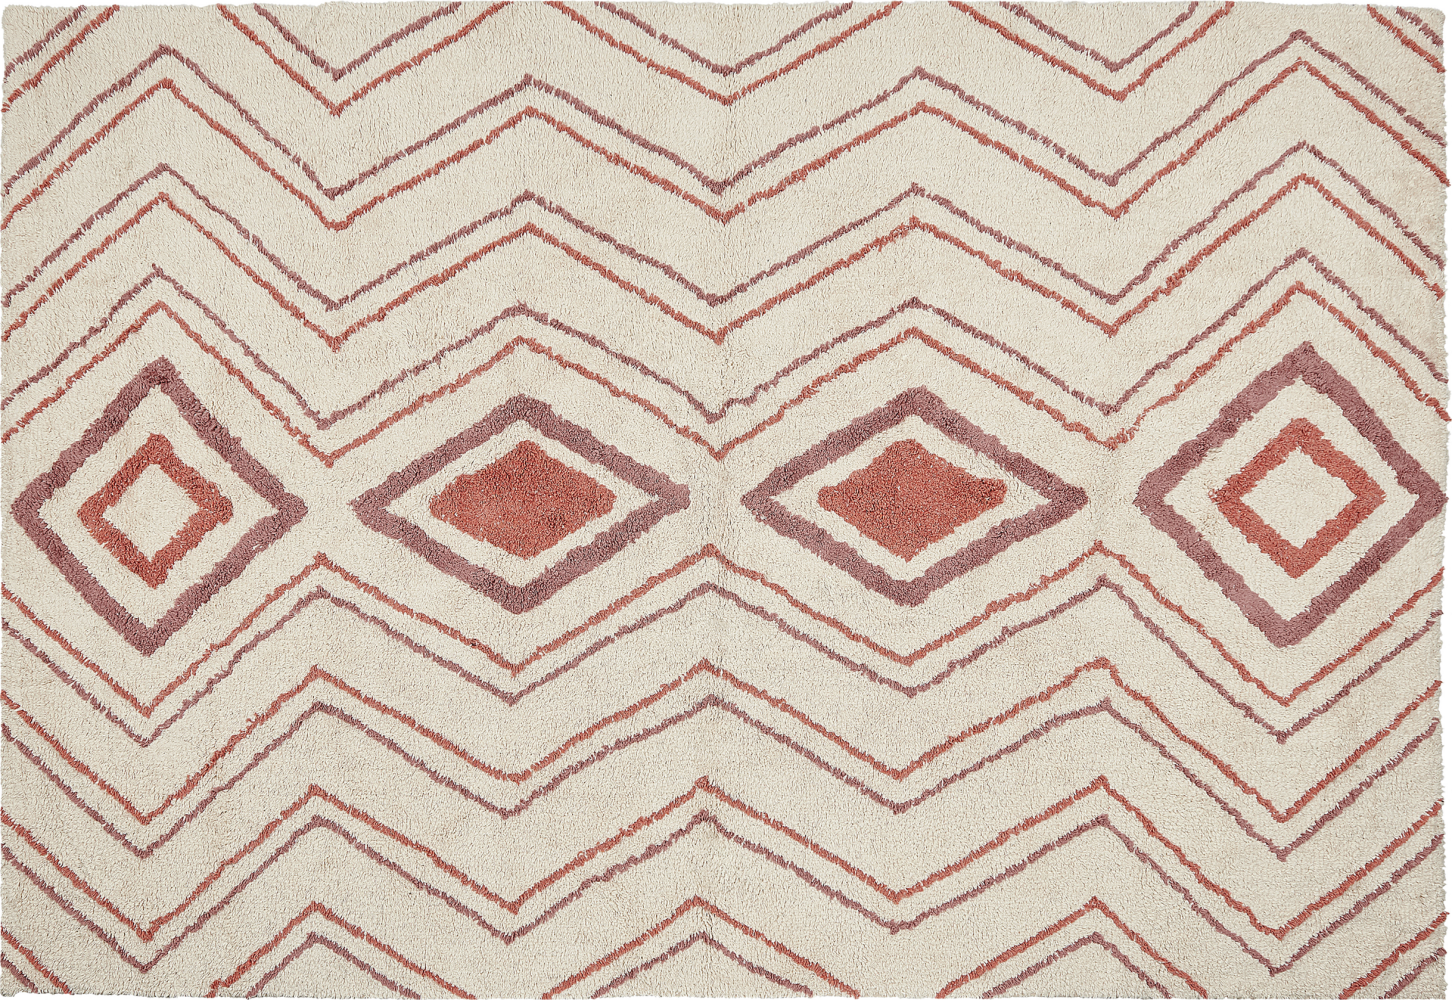 Teppich Baumwolle beige rosa 140 x 200 cm geometrisches Muster KASTAMONU Bild 1